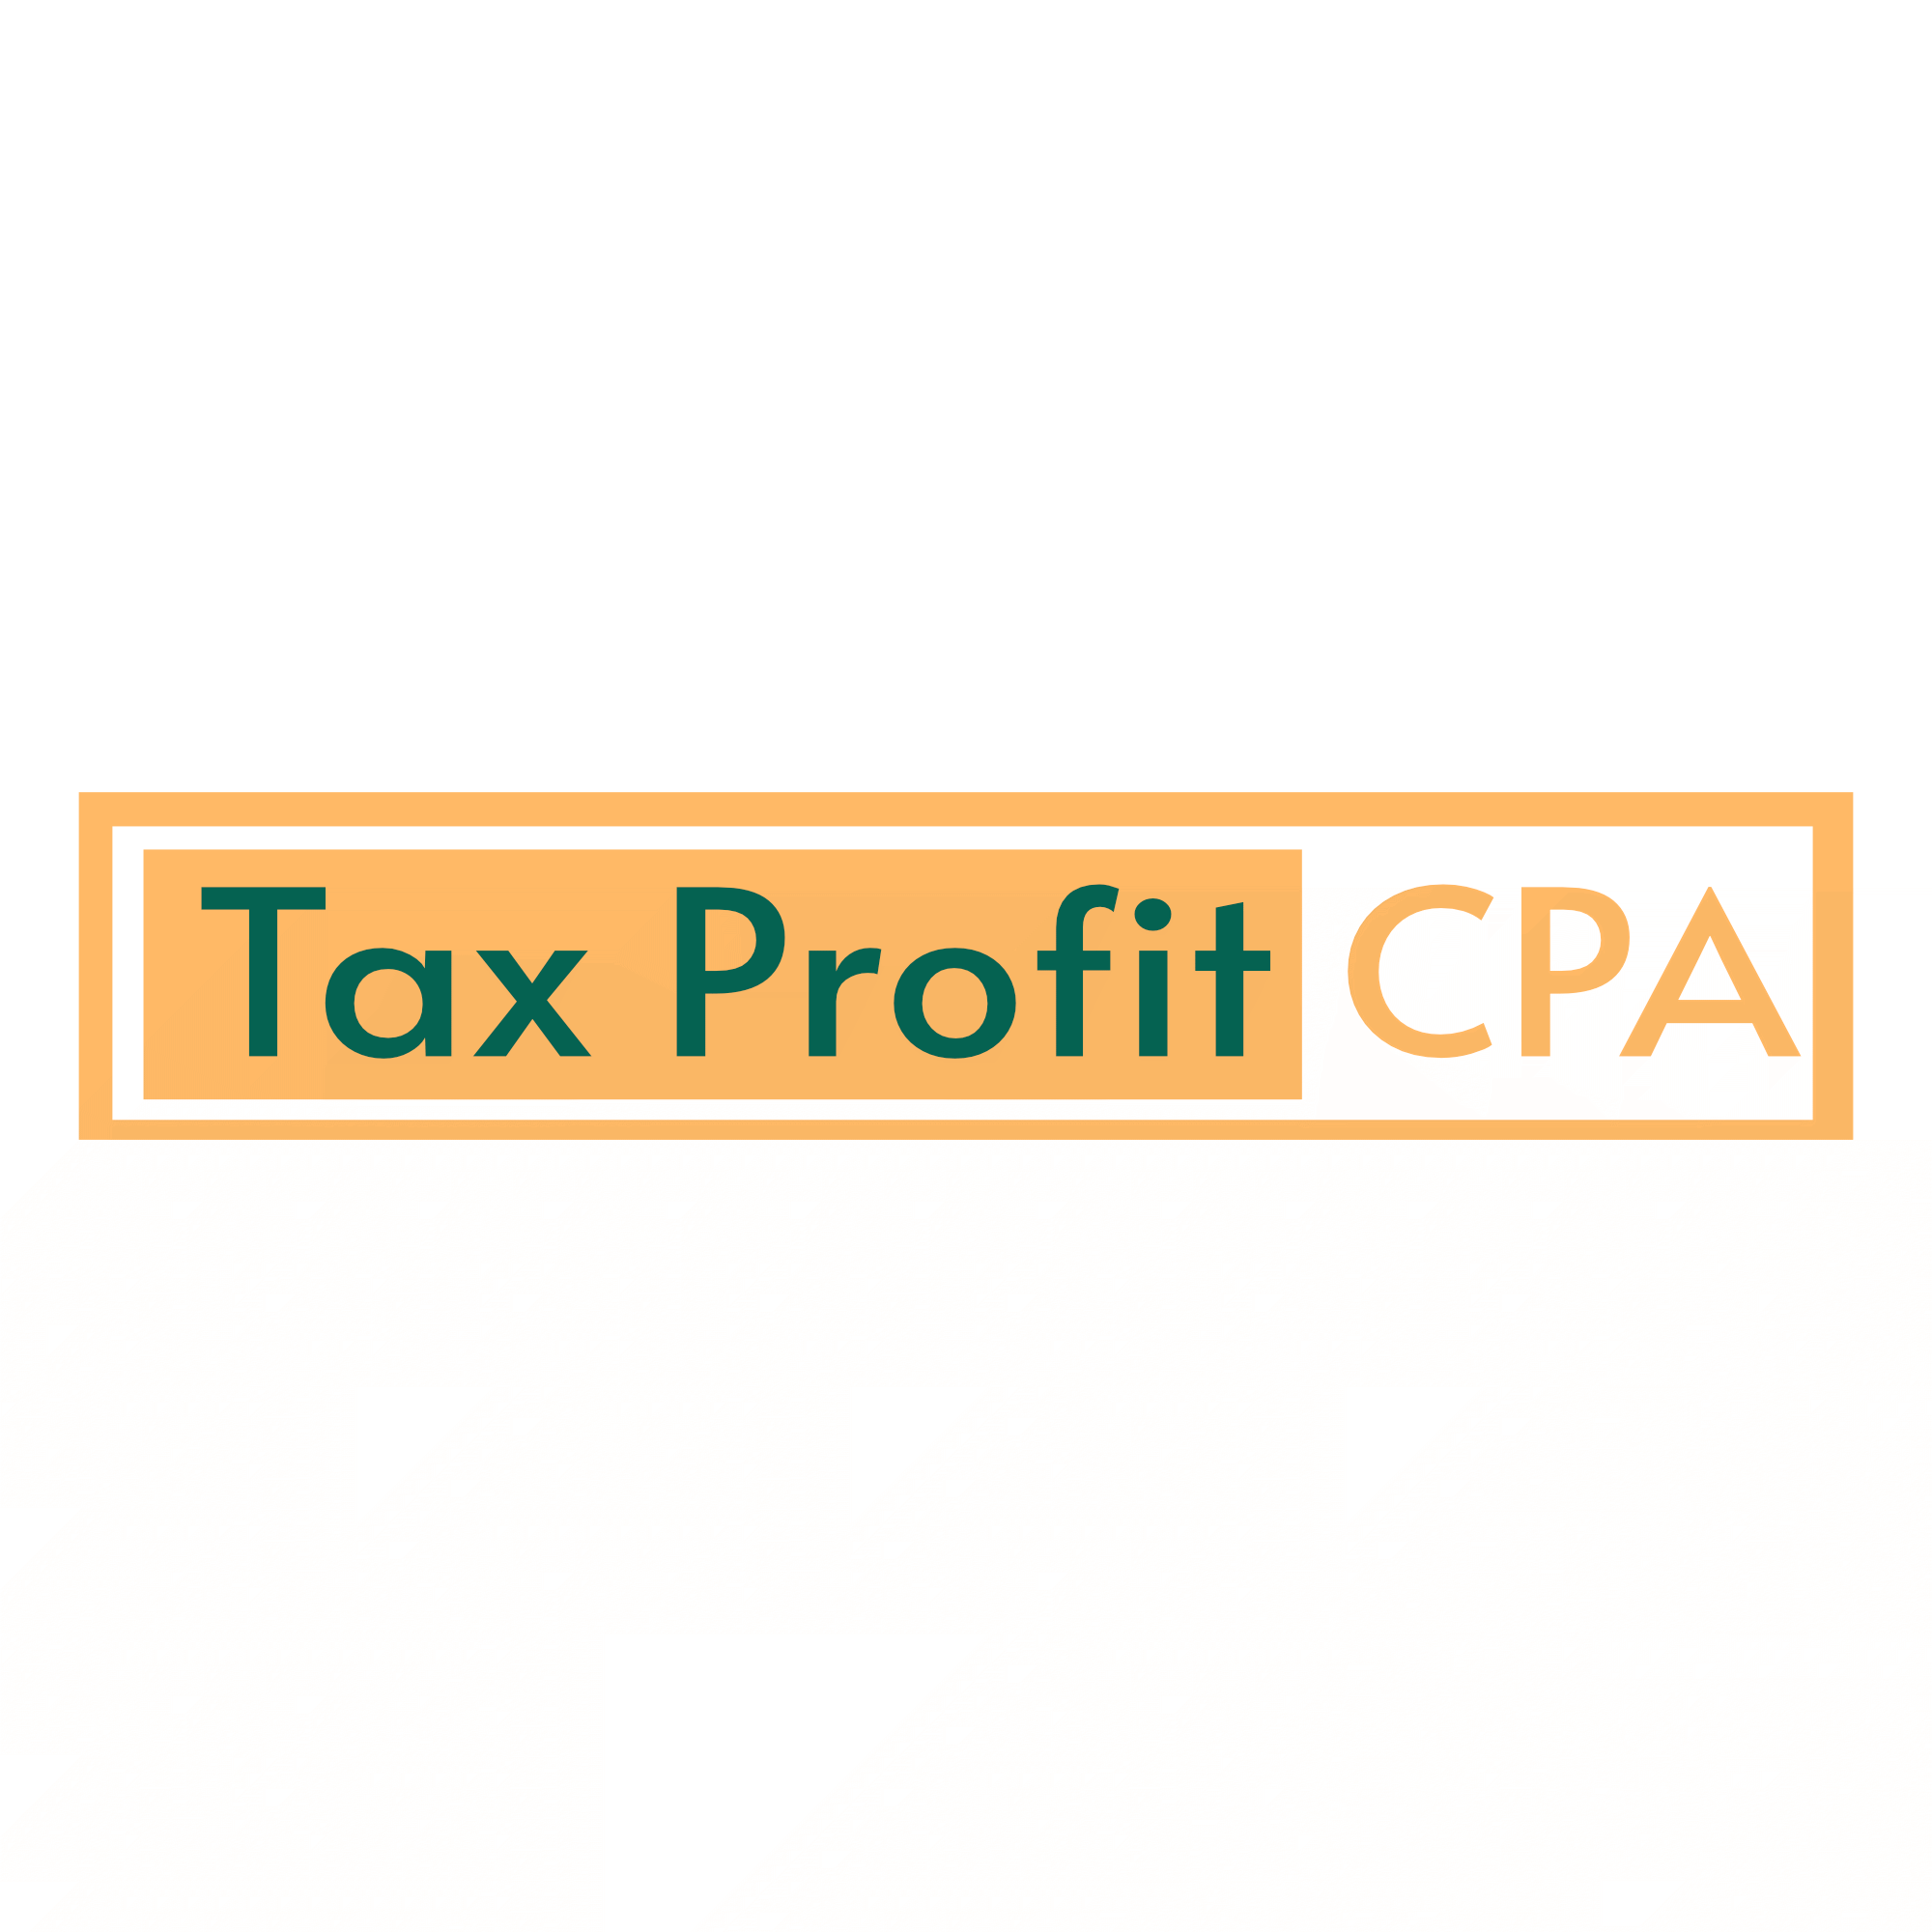 Tax Profit CPA